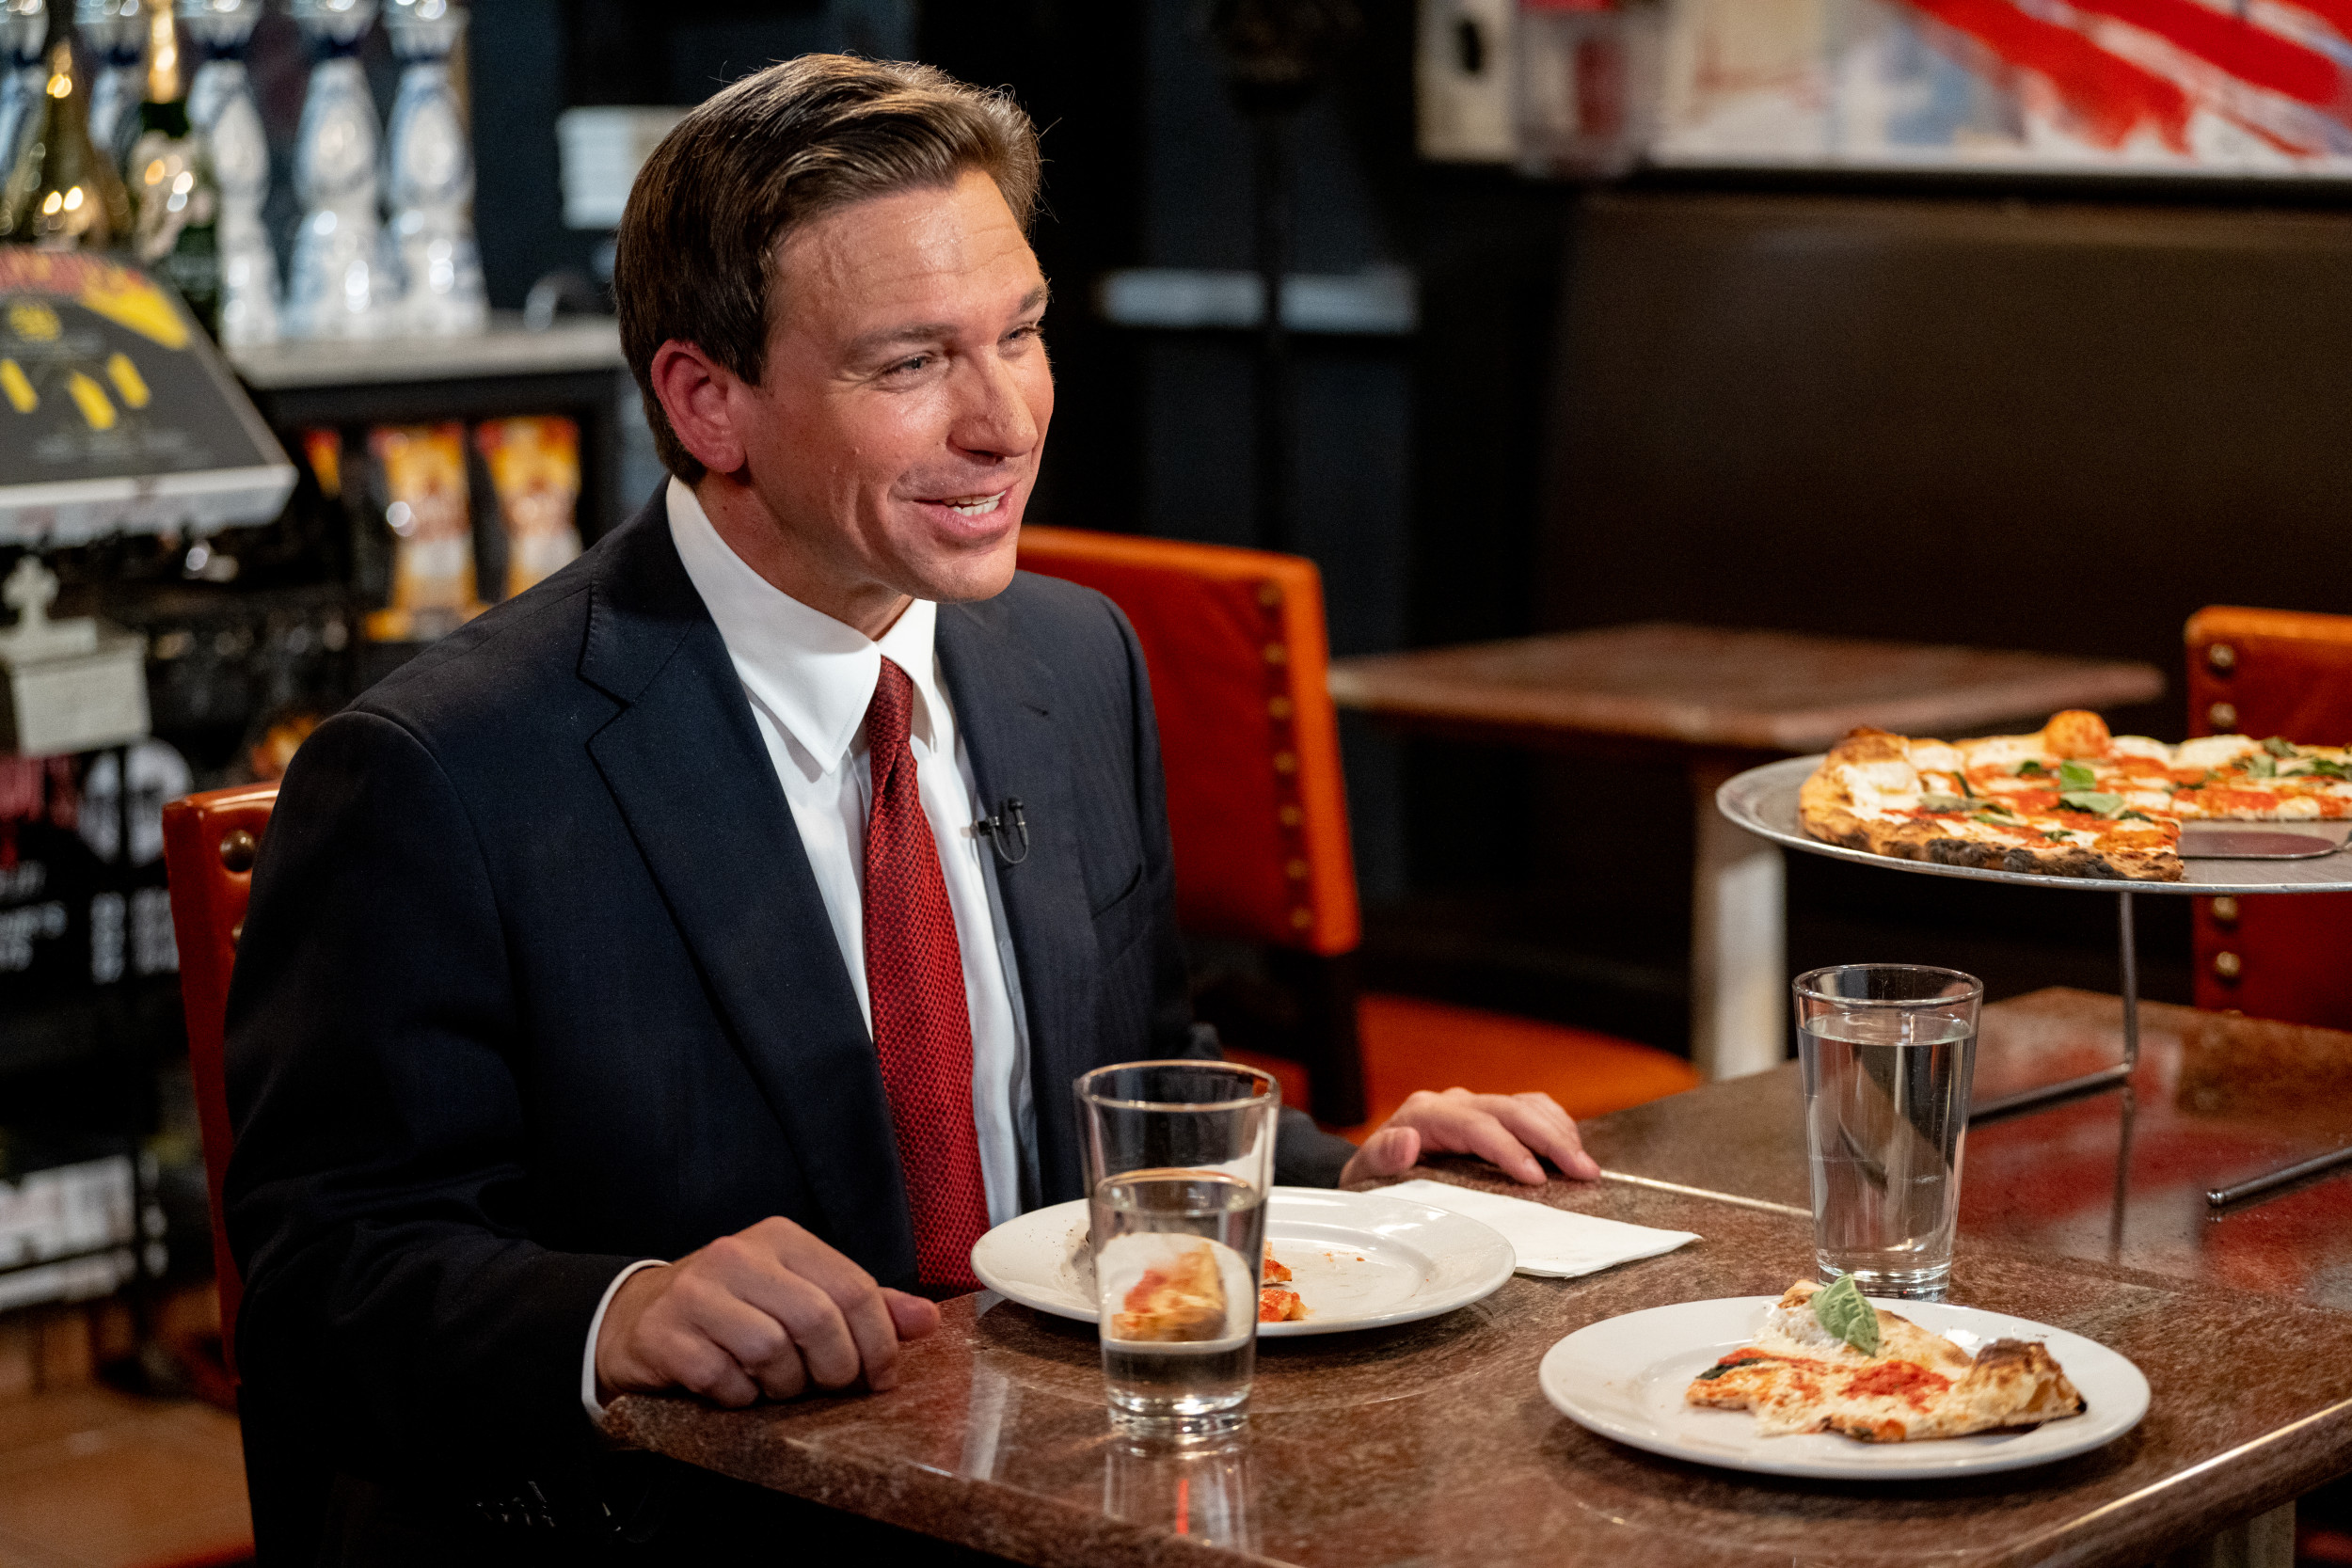 DeSantis touts coal ovens, gives Trump a glimpse of pizza parlor prowess